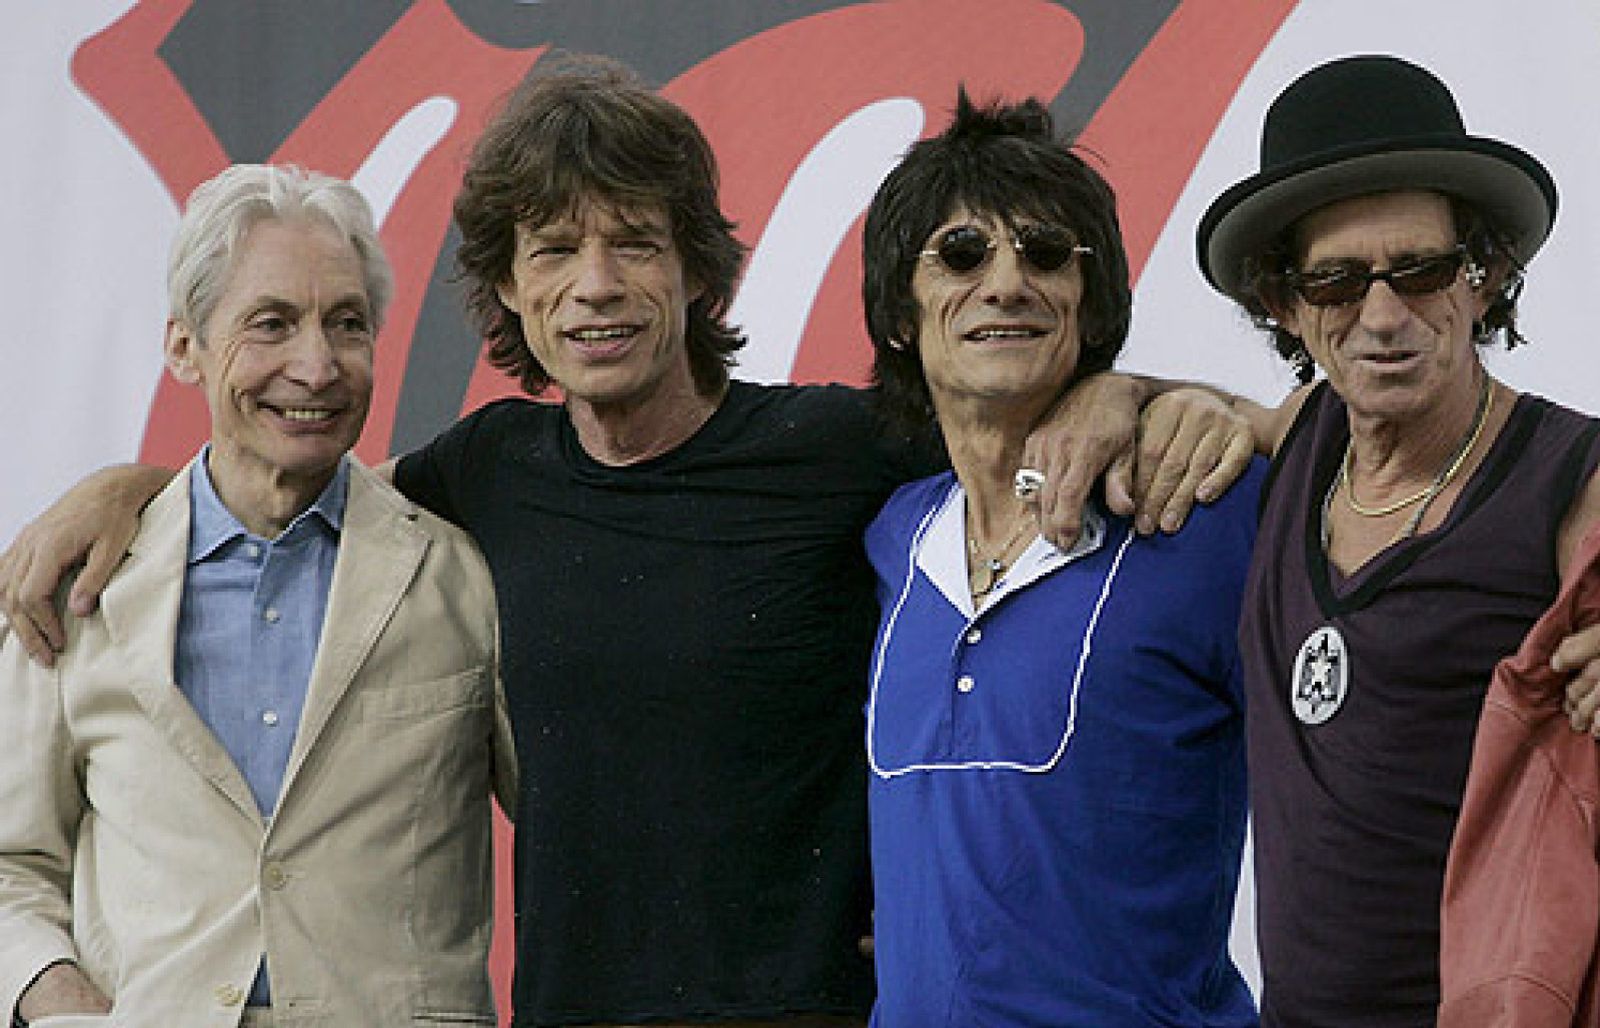 Foto: Los Rolling Stones, The Beatles o Blur: fiebre de temas inéditos